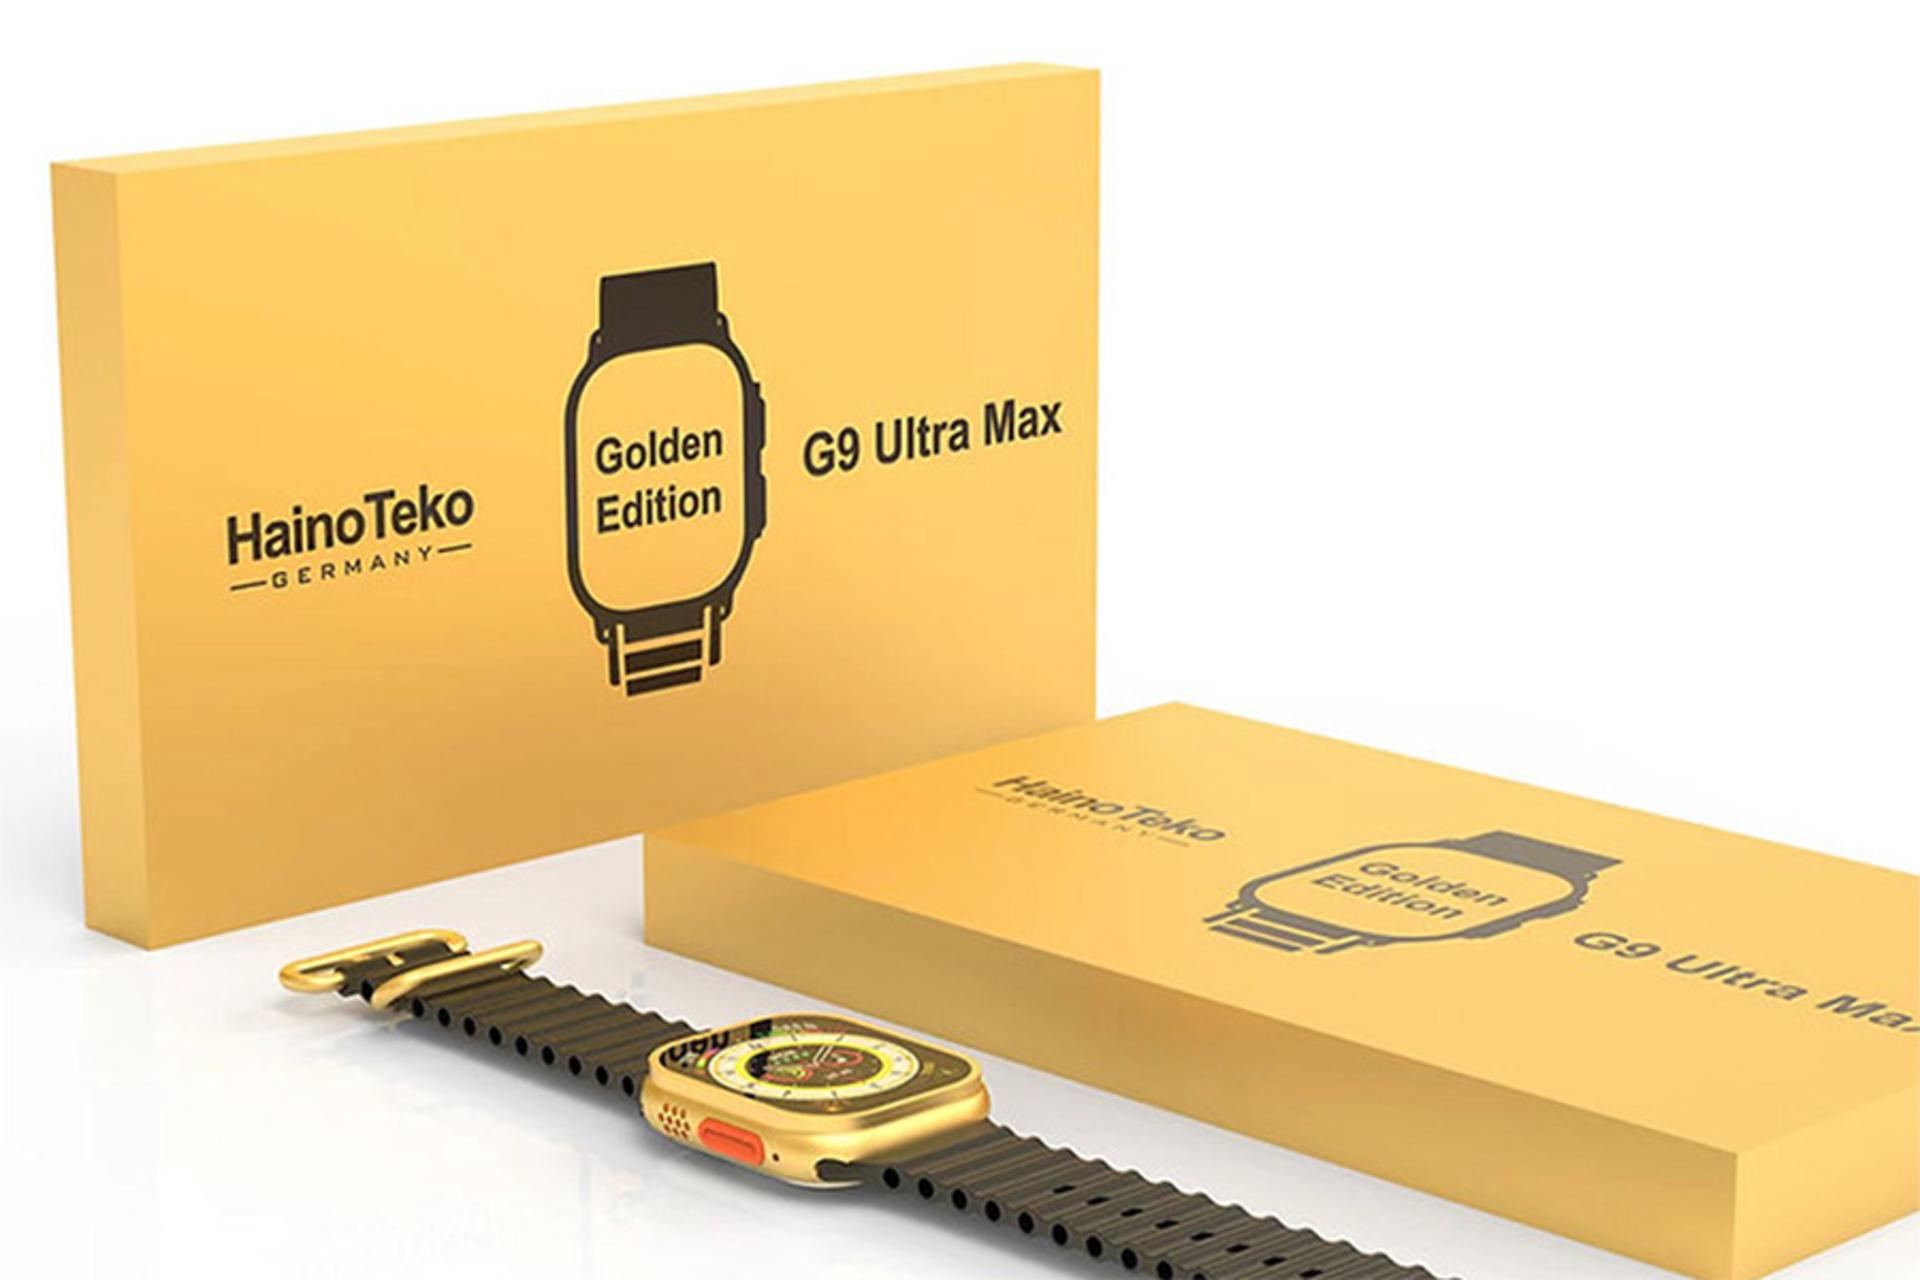 جعبه ساعت هوشمند هاینو تکو Haino Teko G9 Ultra Max